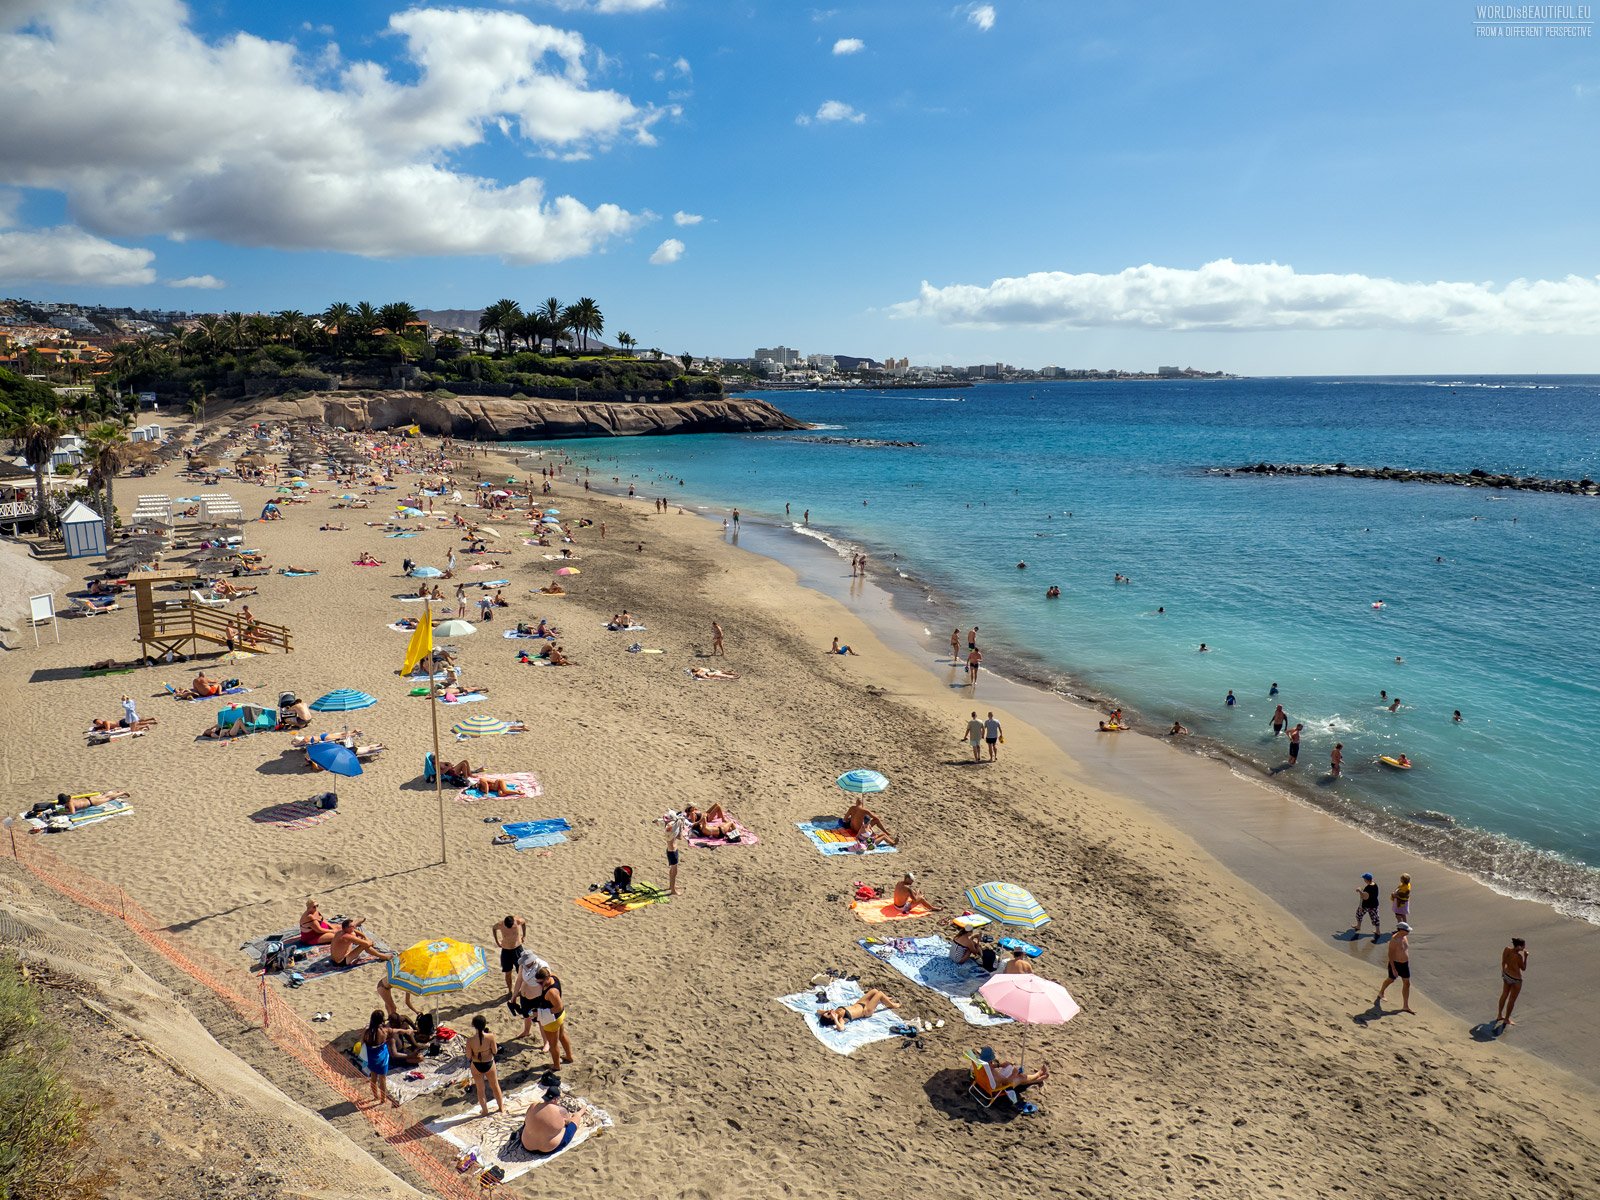 Tenerife's most iconic beaches